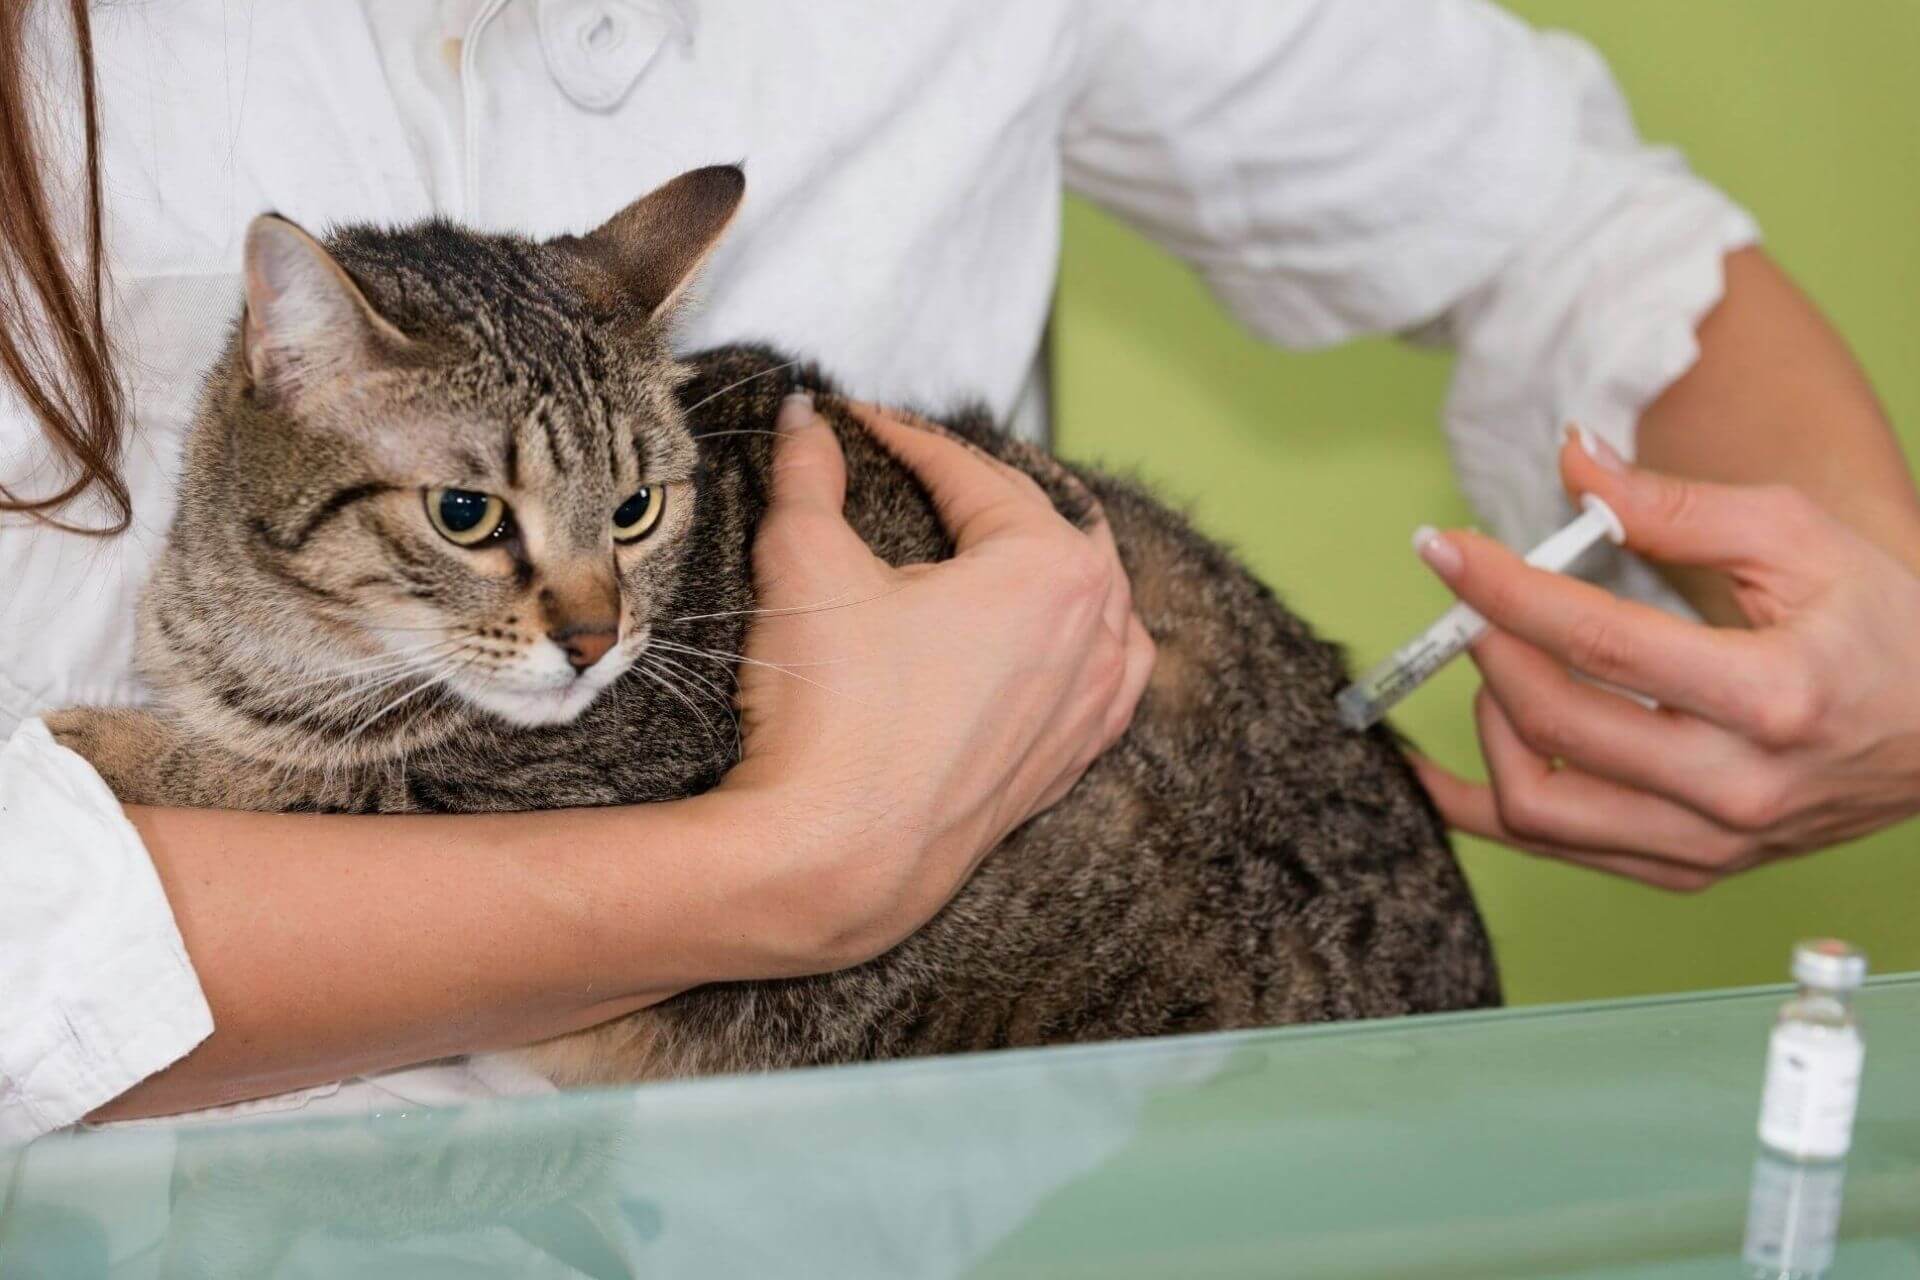 Kedi Mantar Aşısı ve Fiyatı [2021] Miyavliyo